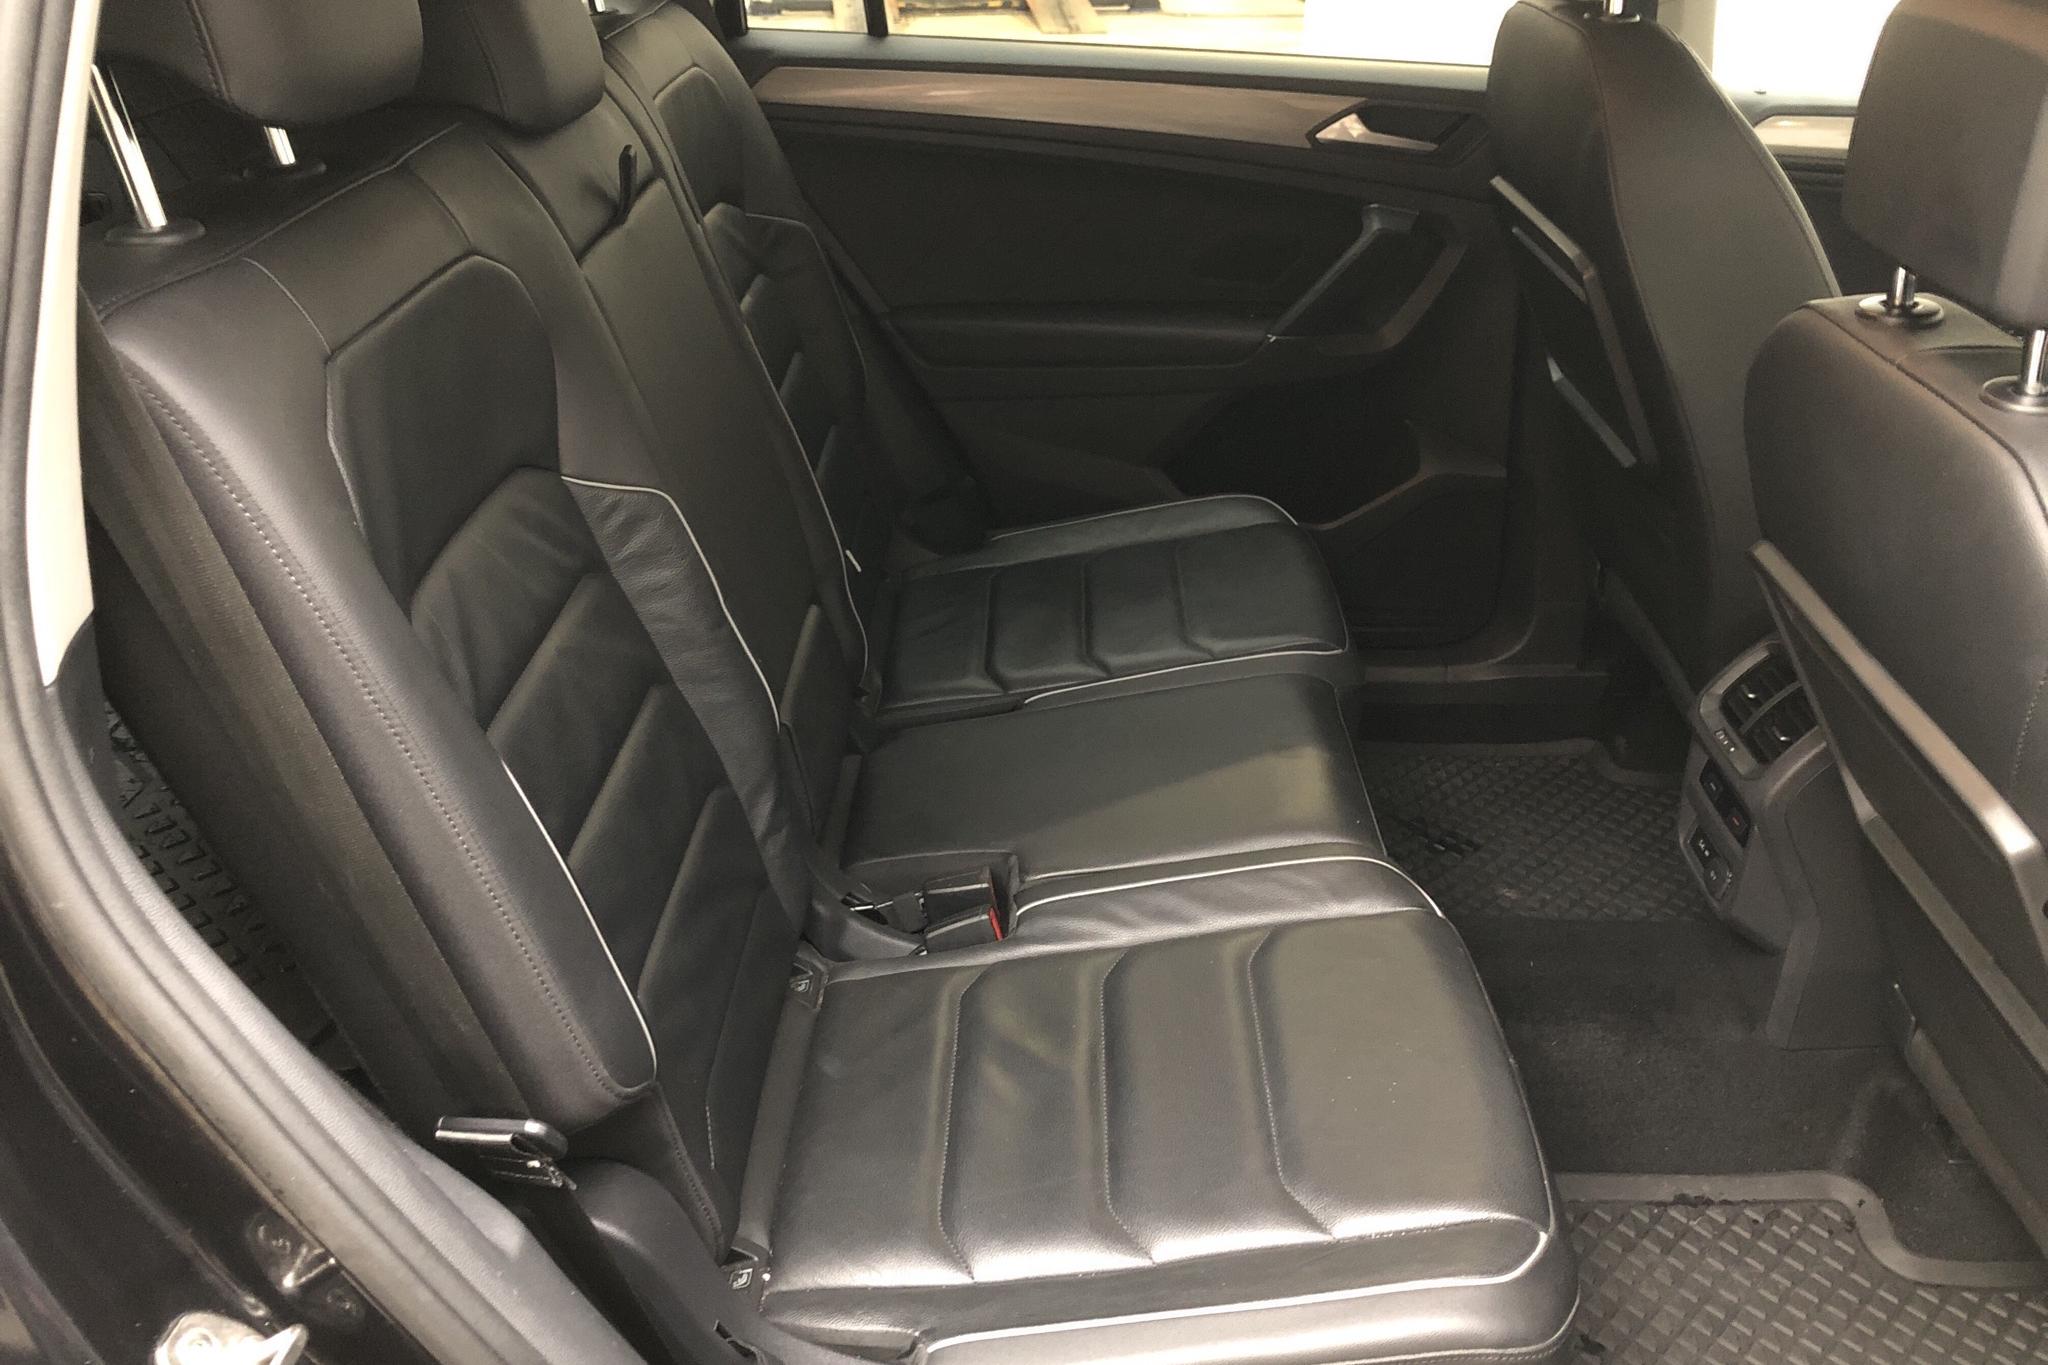 VW Tiguan Allspace 2.0 TSI 4MOTION (190hk) - 132 450 km - Automatic - black - 2019